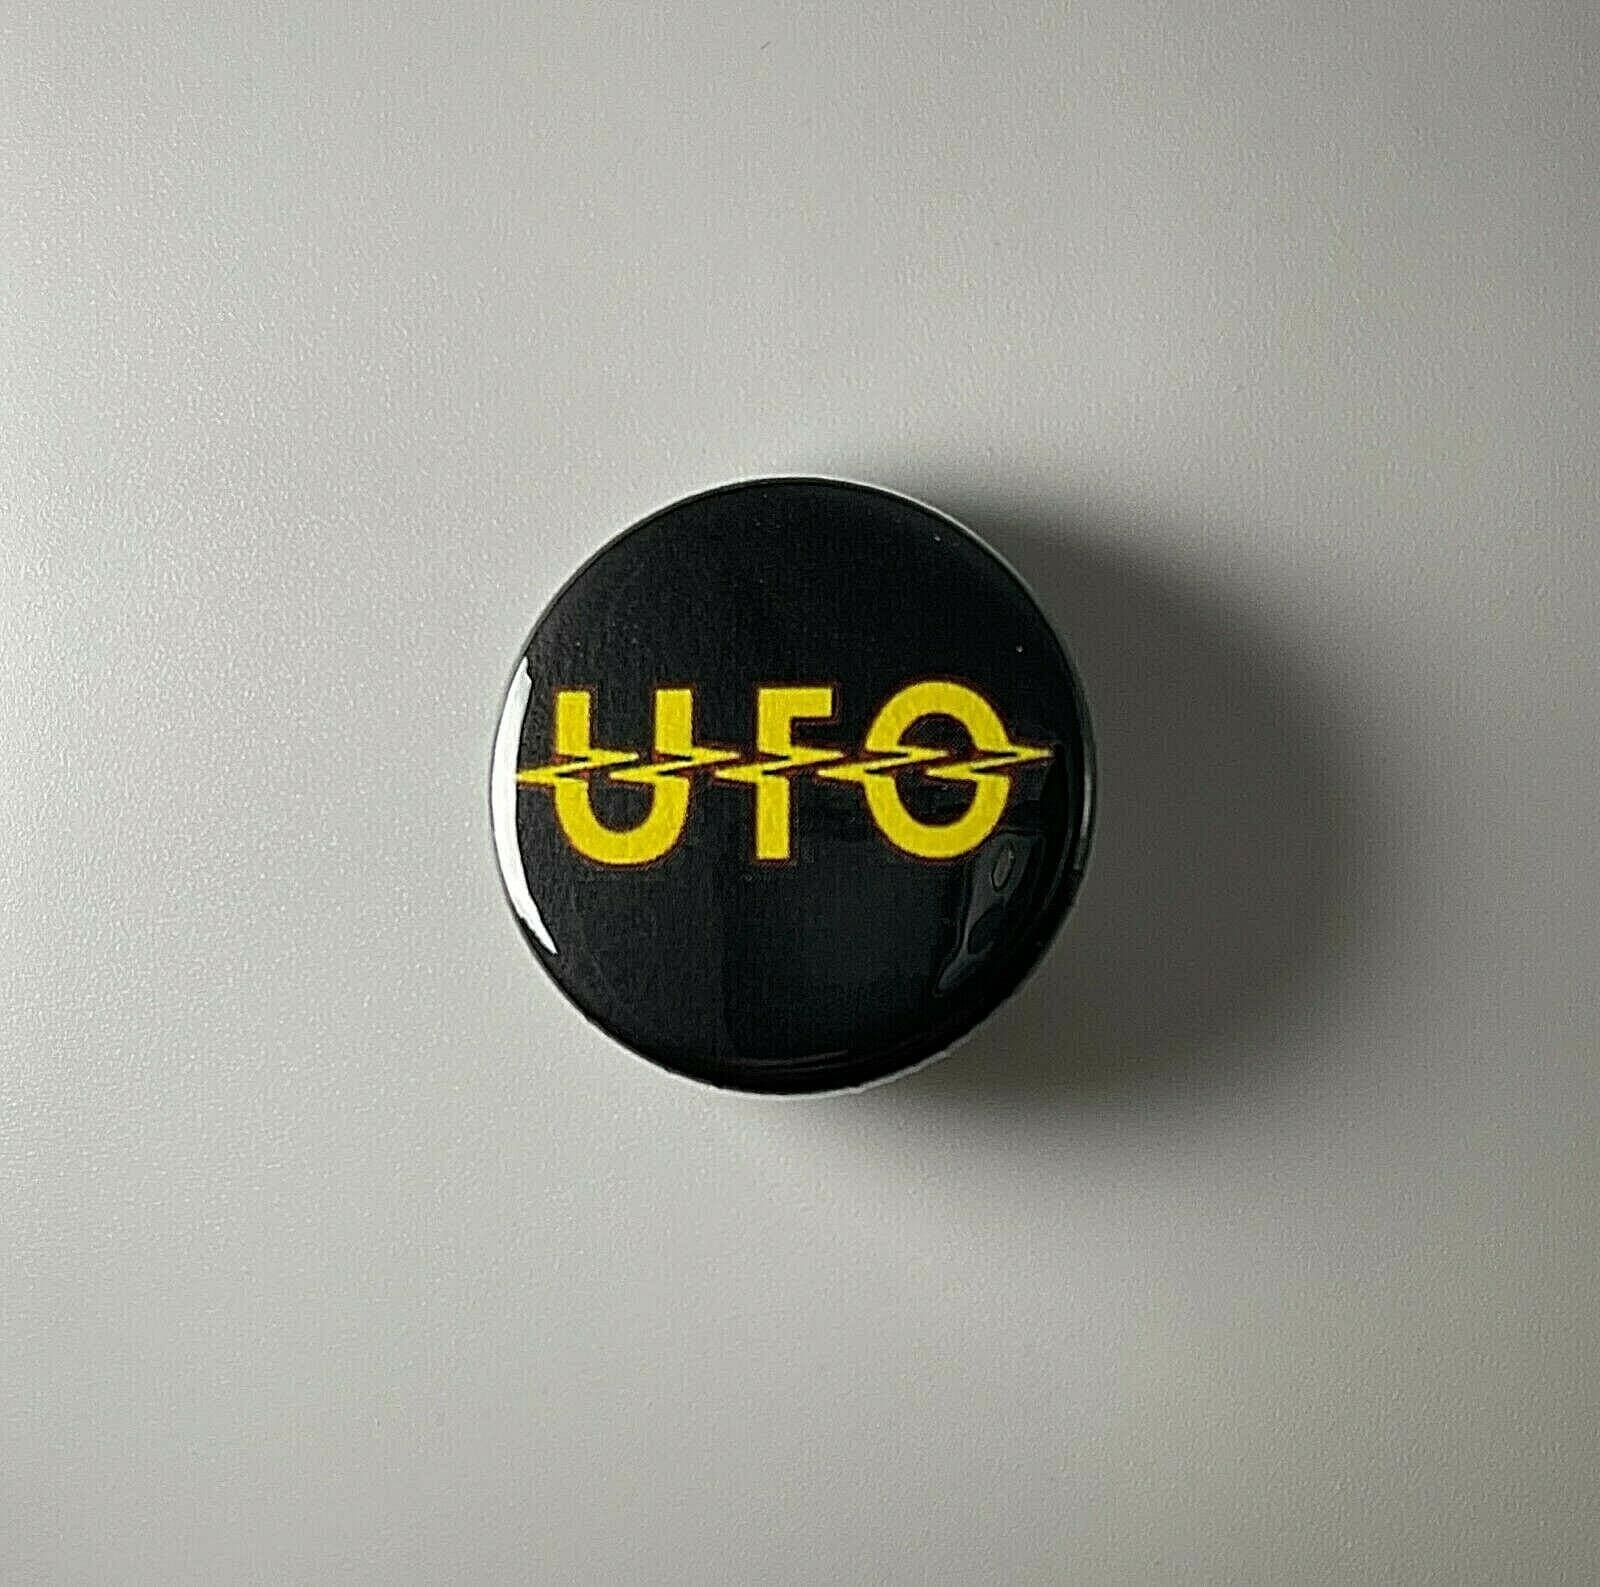 Ufo Michael Schenker 1.25" Button U004B125 Pin Anstecker von Heavylowmerchandise